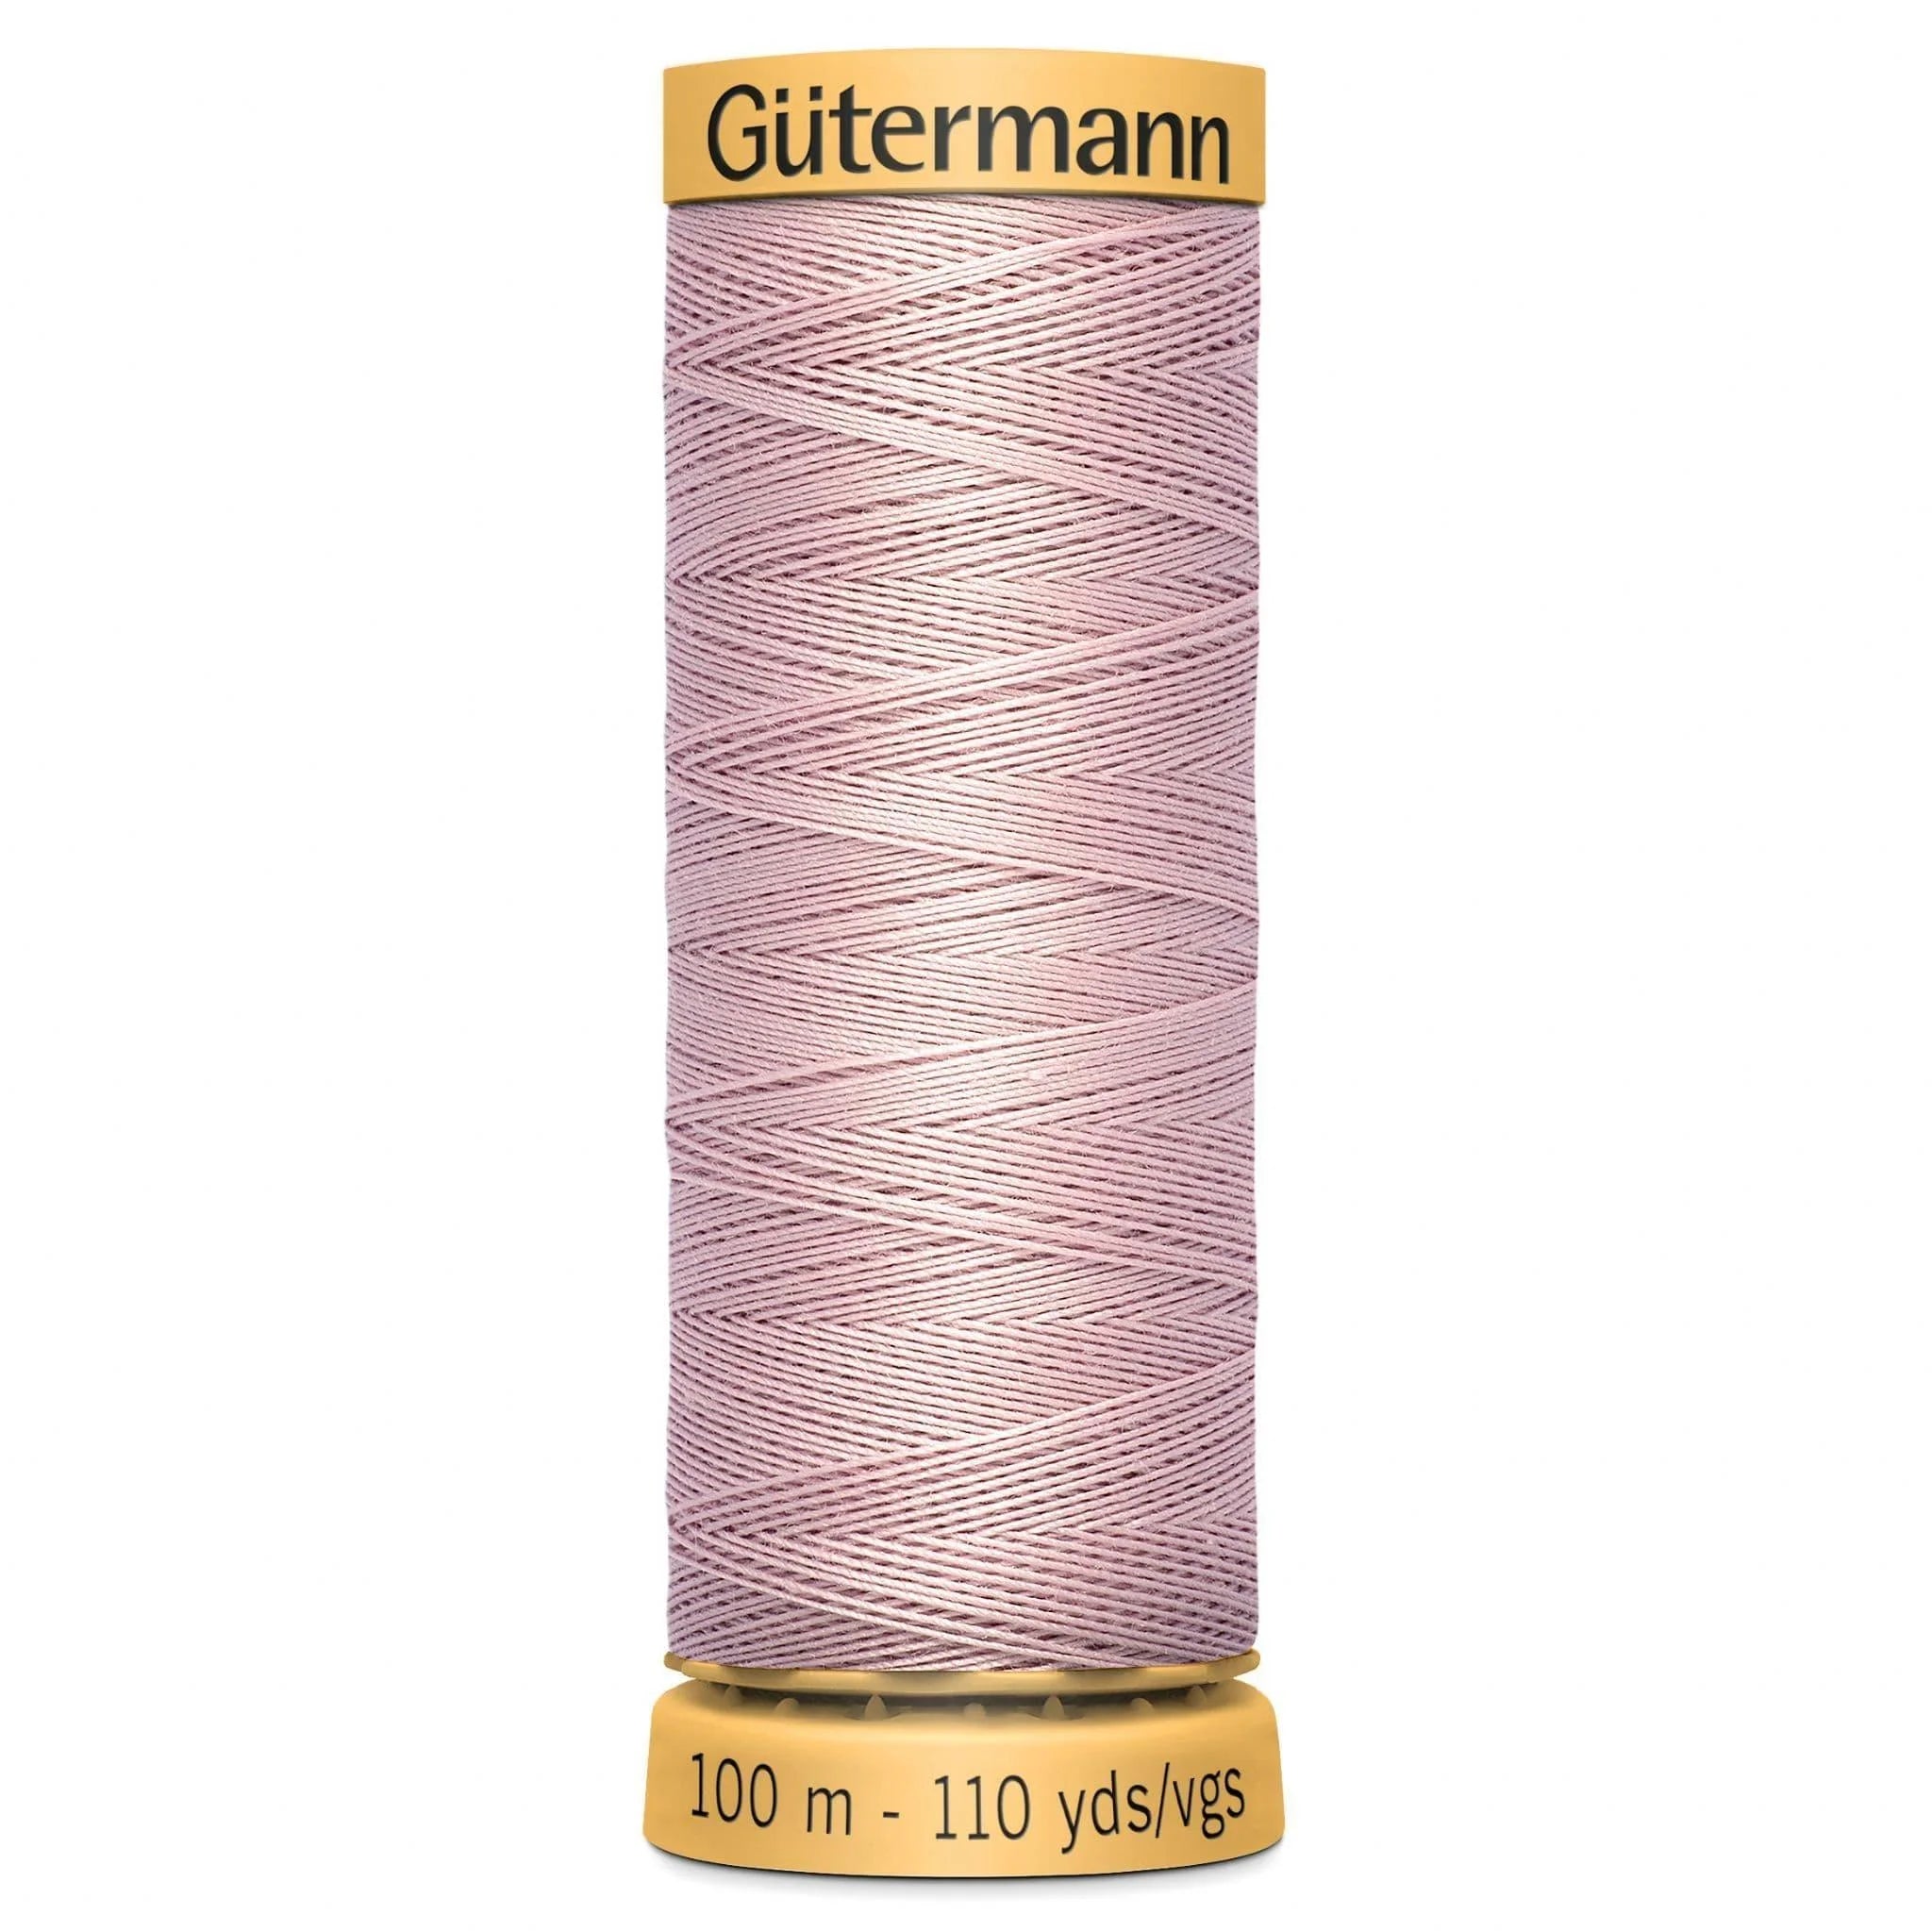 3117 Gutermann Natural Cotton Thread 100m - Pastel Peach